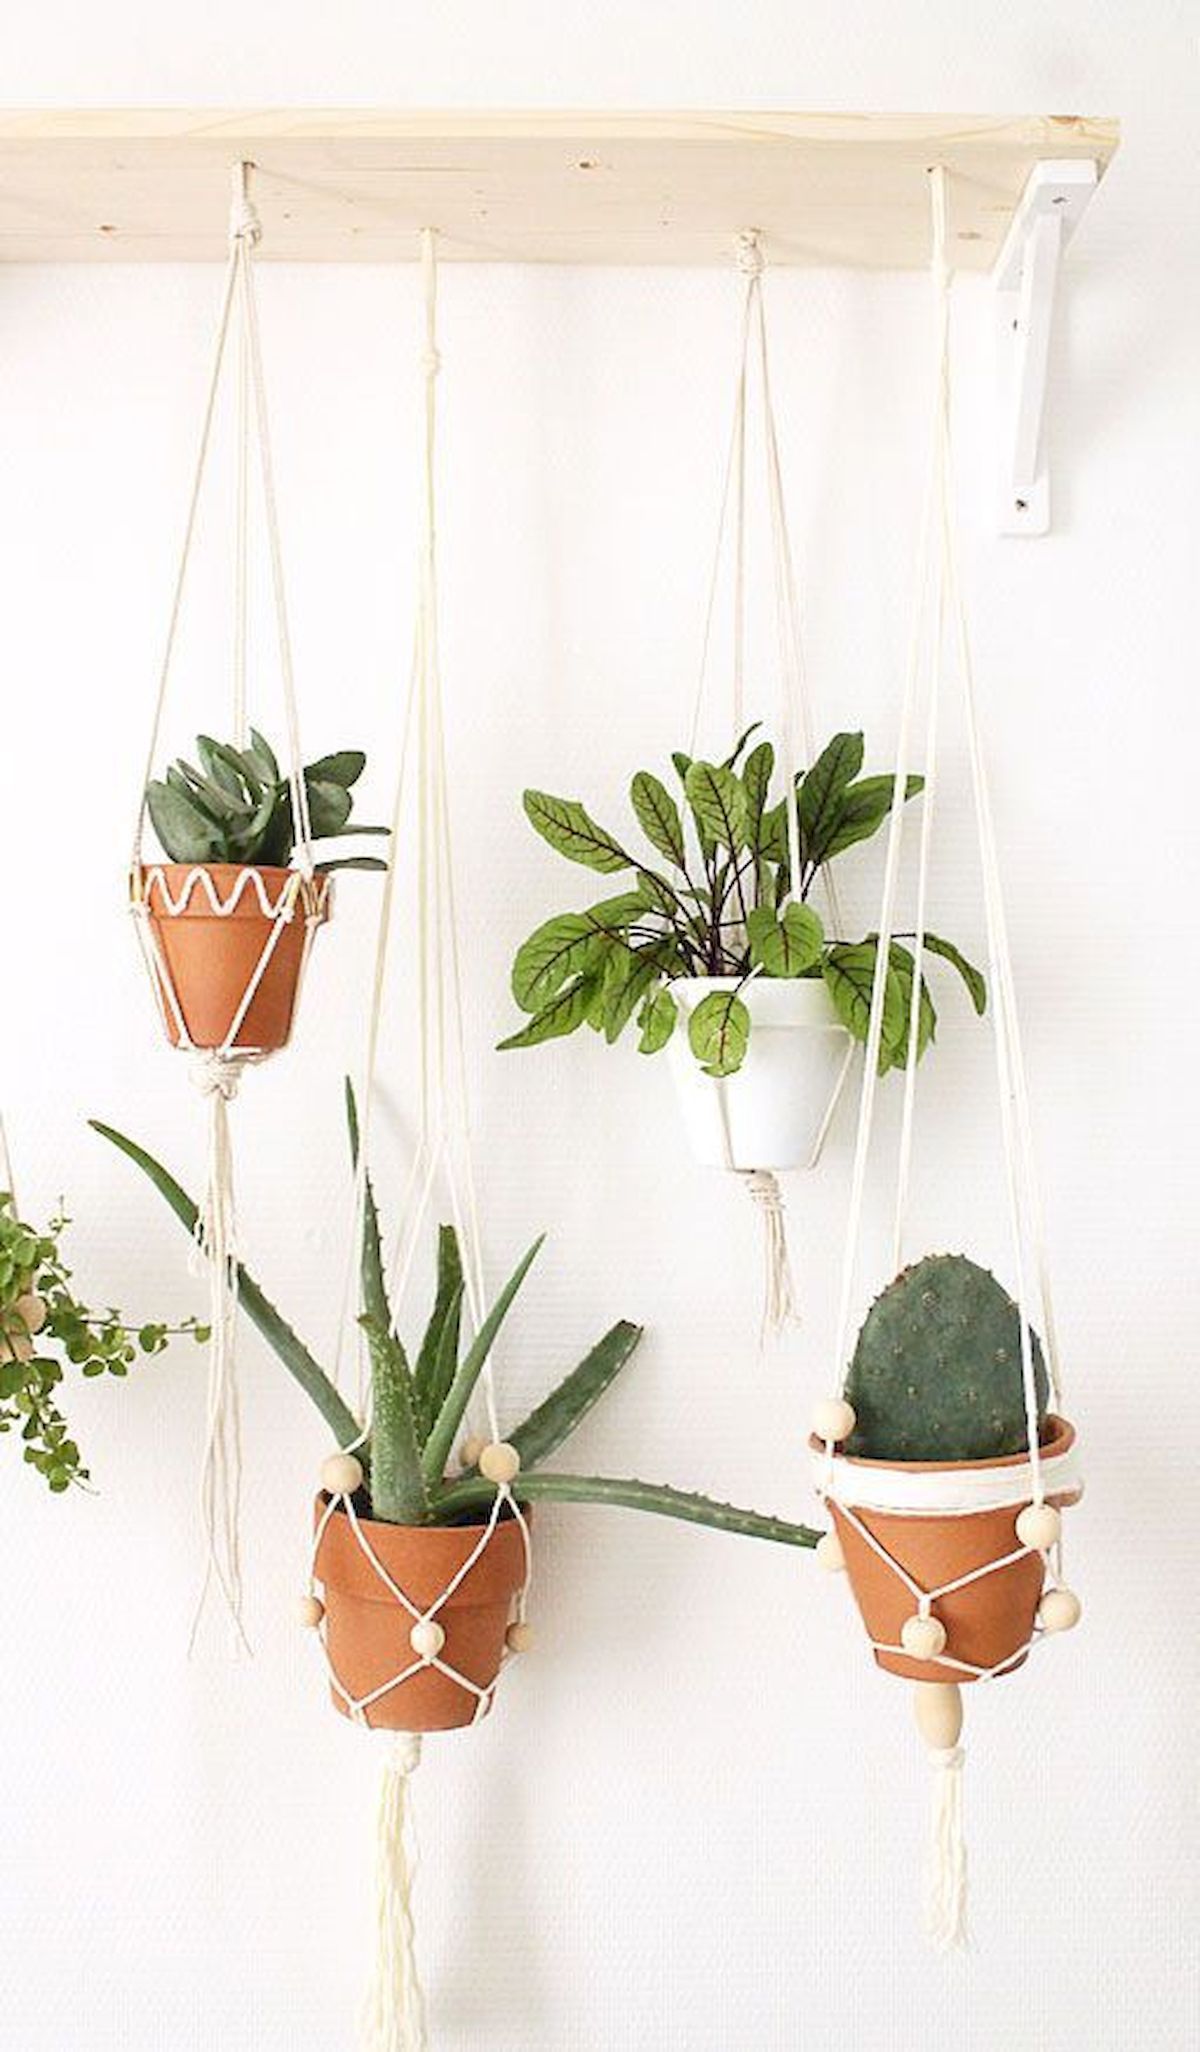 9 hanging plants Interieur ideas